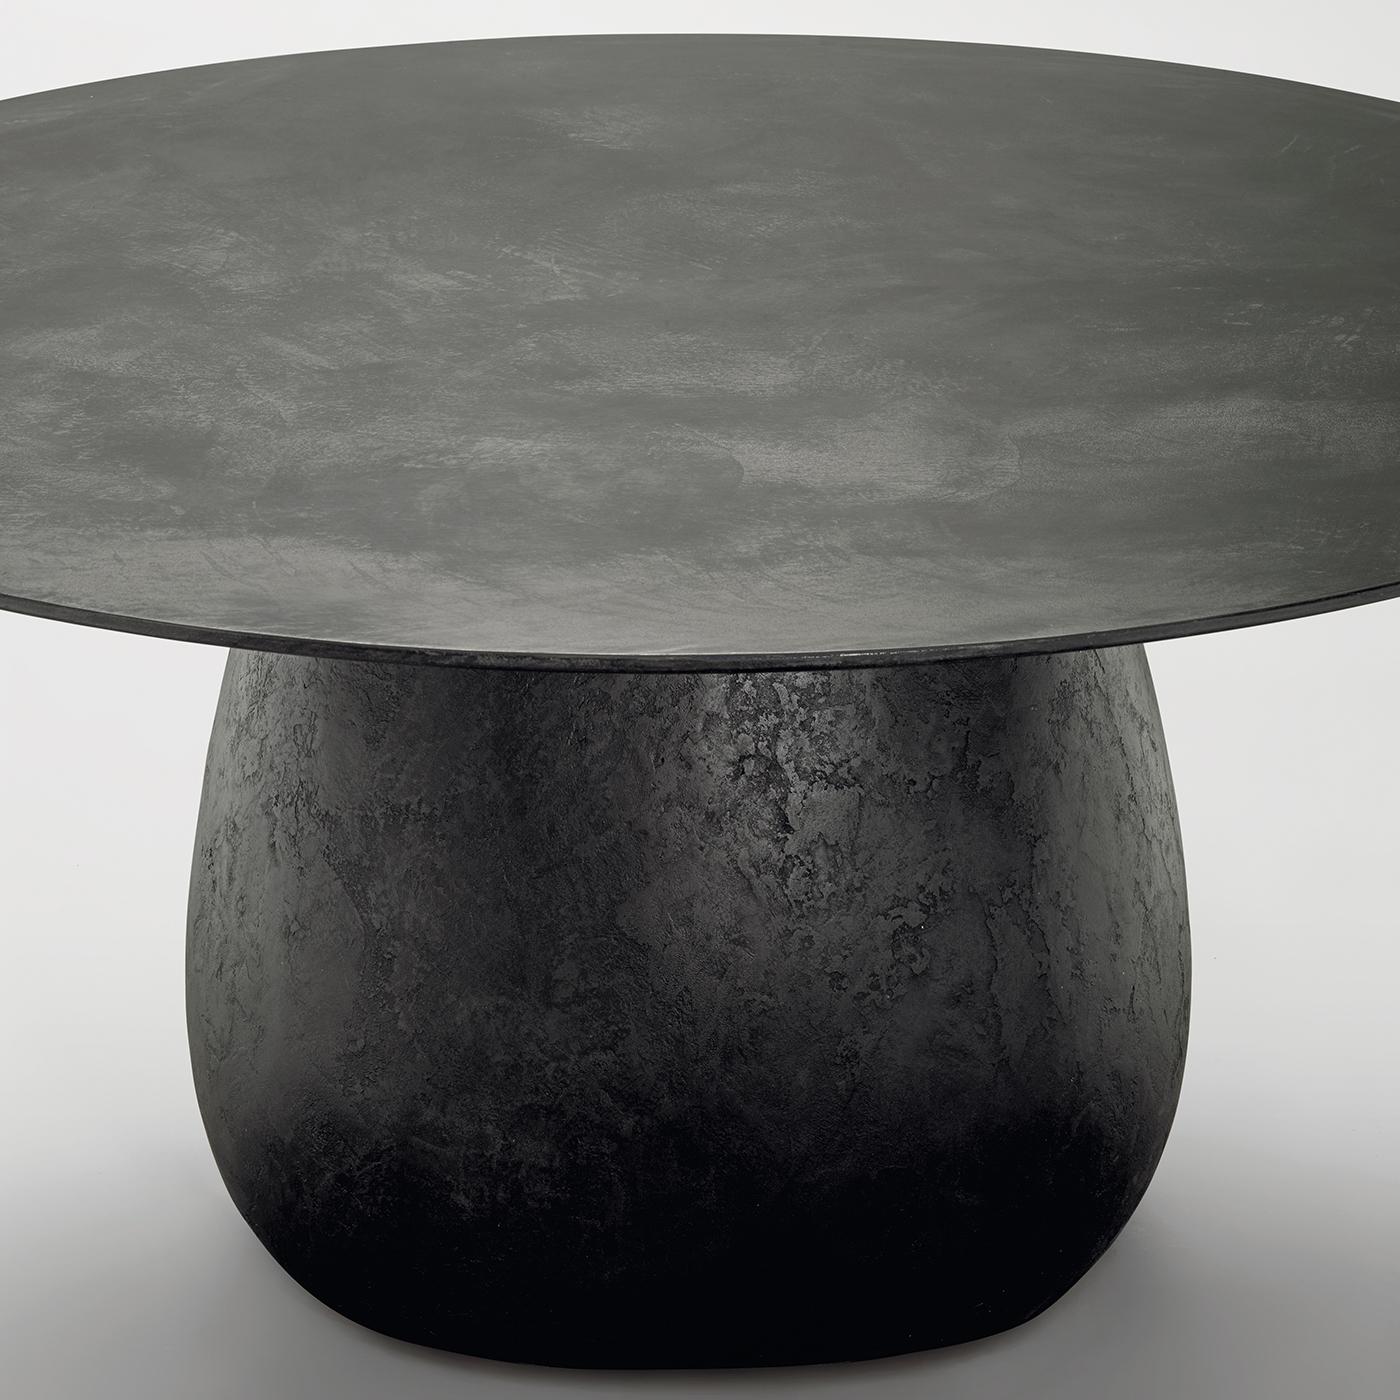 Dieser kühne und raffinierte Esstisch zeichnet sich durch eine skulpturale Silhouette aus, die sich aus zwei Elementen zusammensetzt: einem stabilen Unterbau aus Stahlbeinen, die von hartem Polyurethan umgeben sind, und einer runden Platte aus